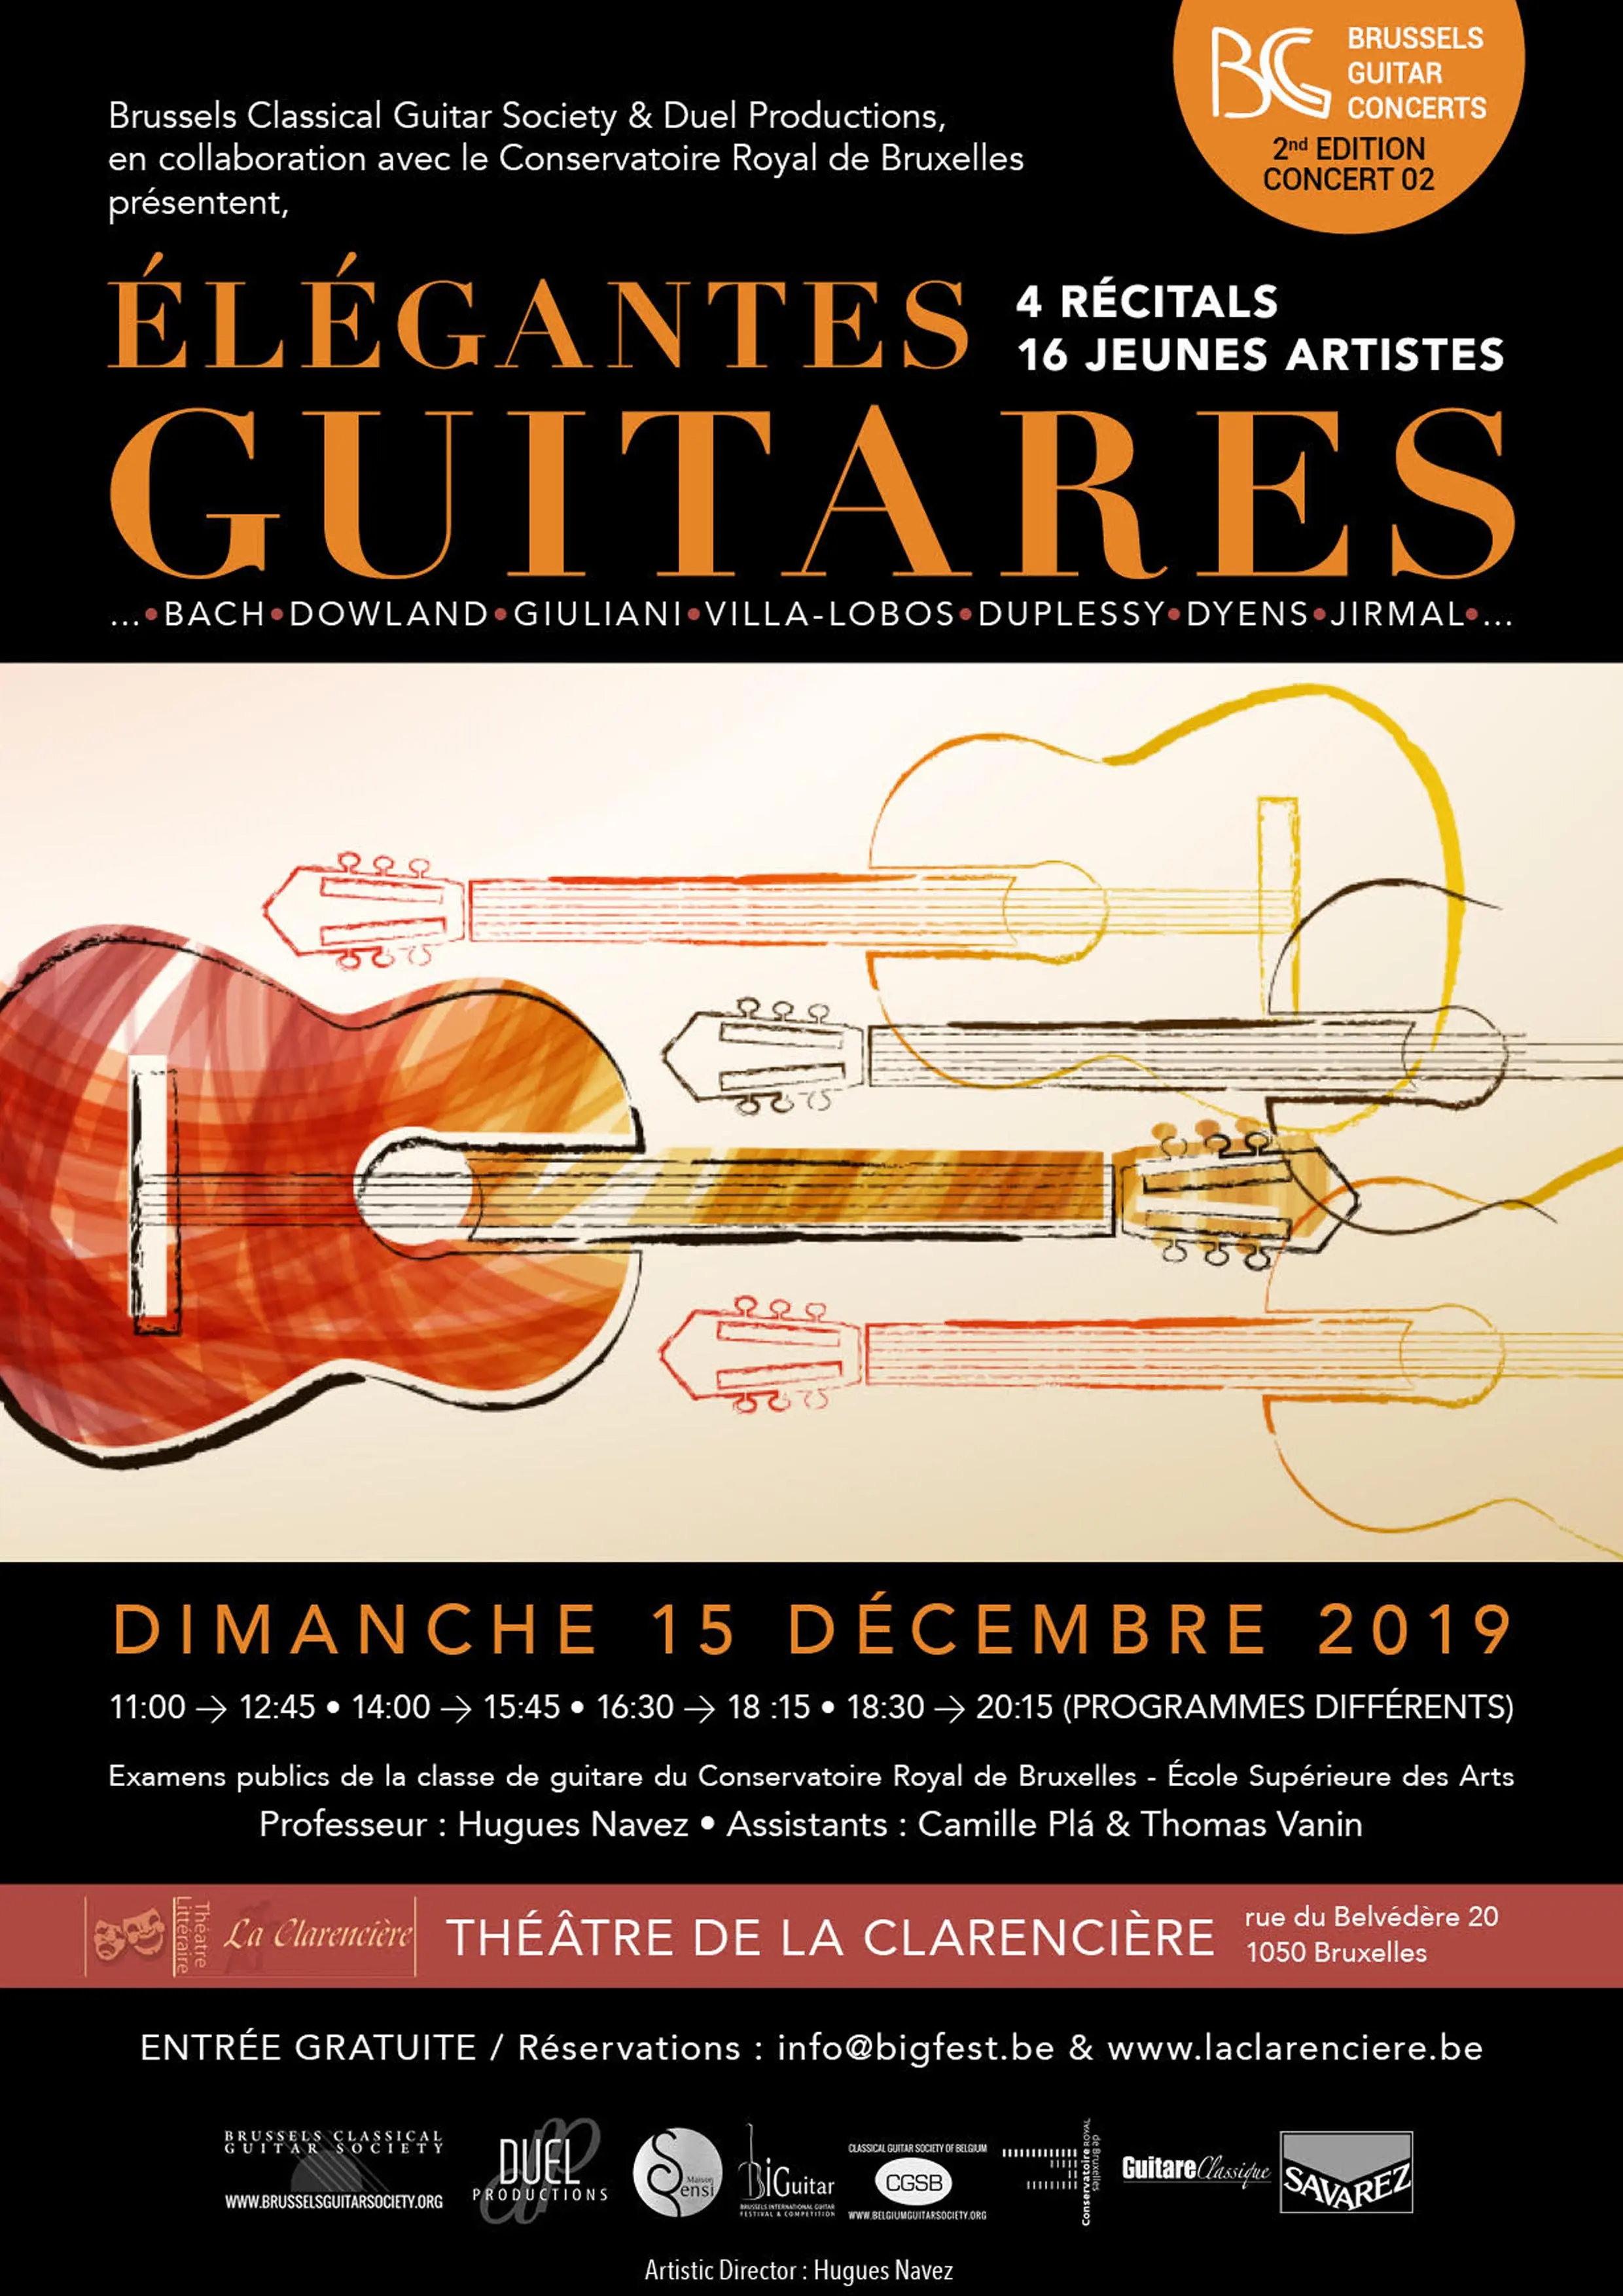 16 jeunes artistes – 4 récitals - « Élégantes Guitares » - Brussels Guitar Concerts